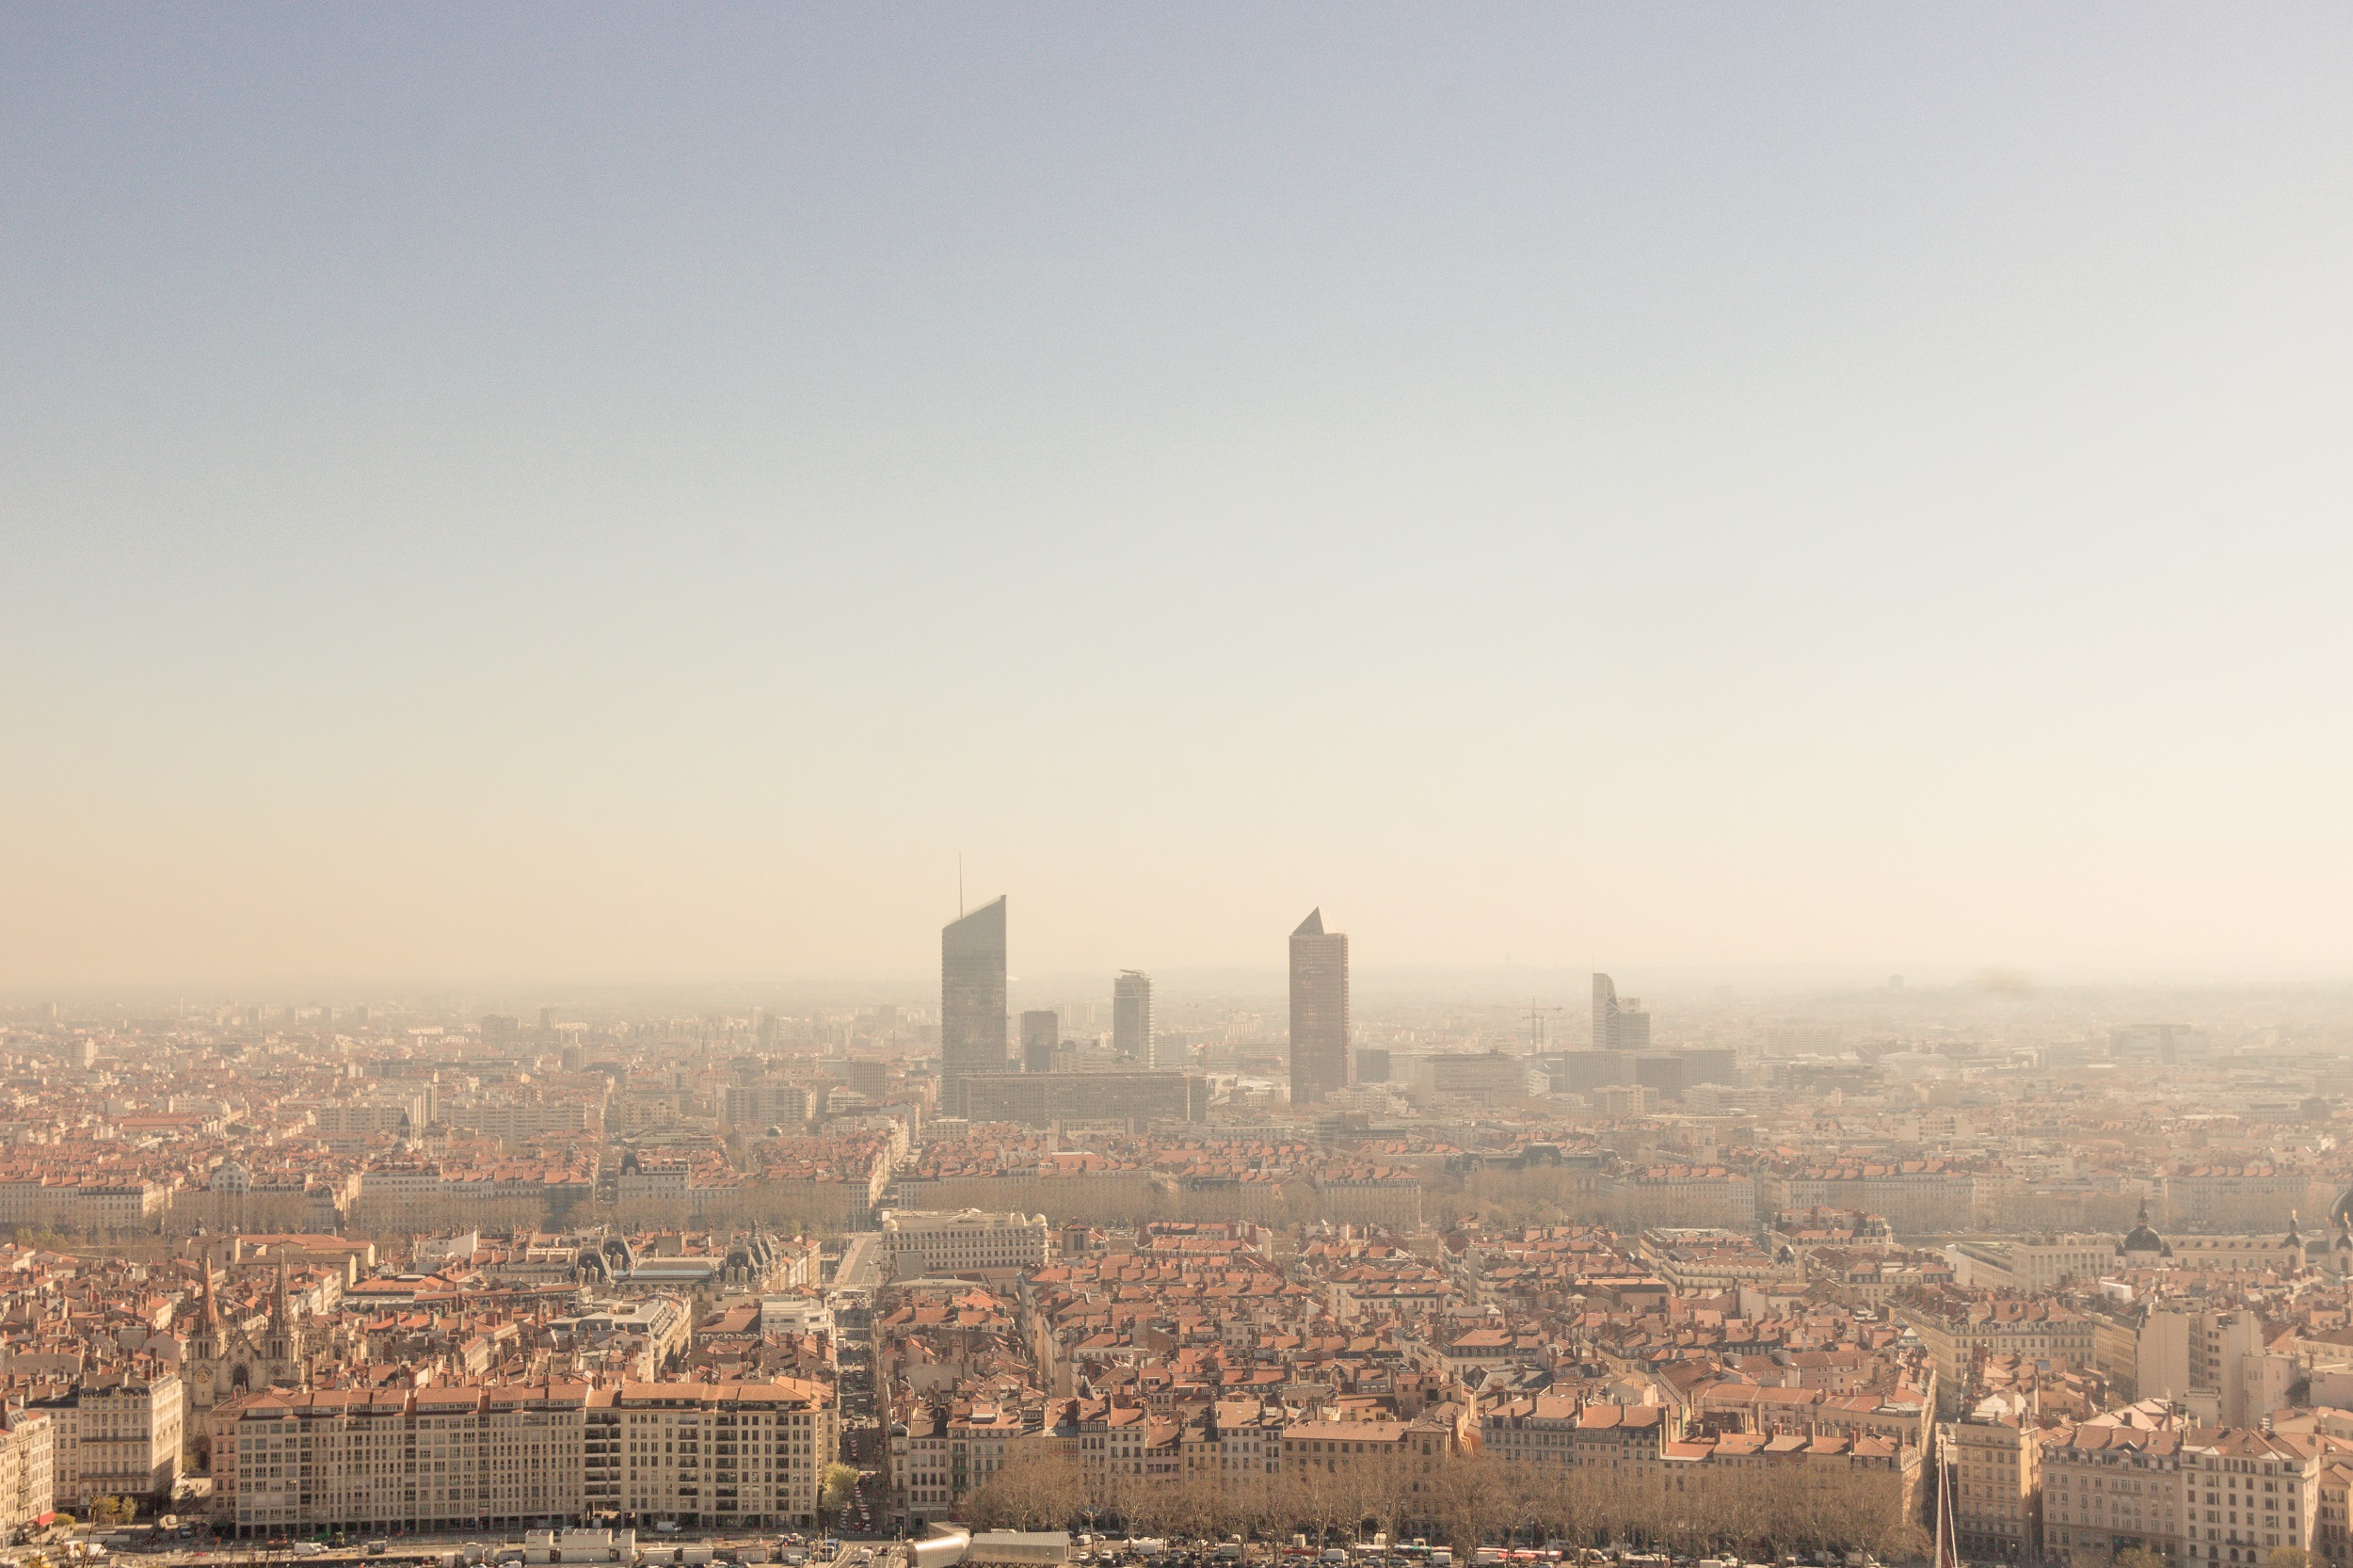 La canicule, qui a été intense à Lyon, a été 1 à 4 °C plus chaude à cause du réchauffement climatique. © jef 77, Adobe Stock